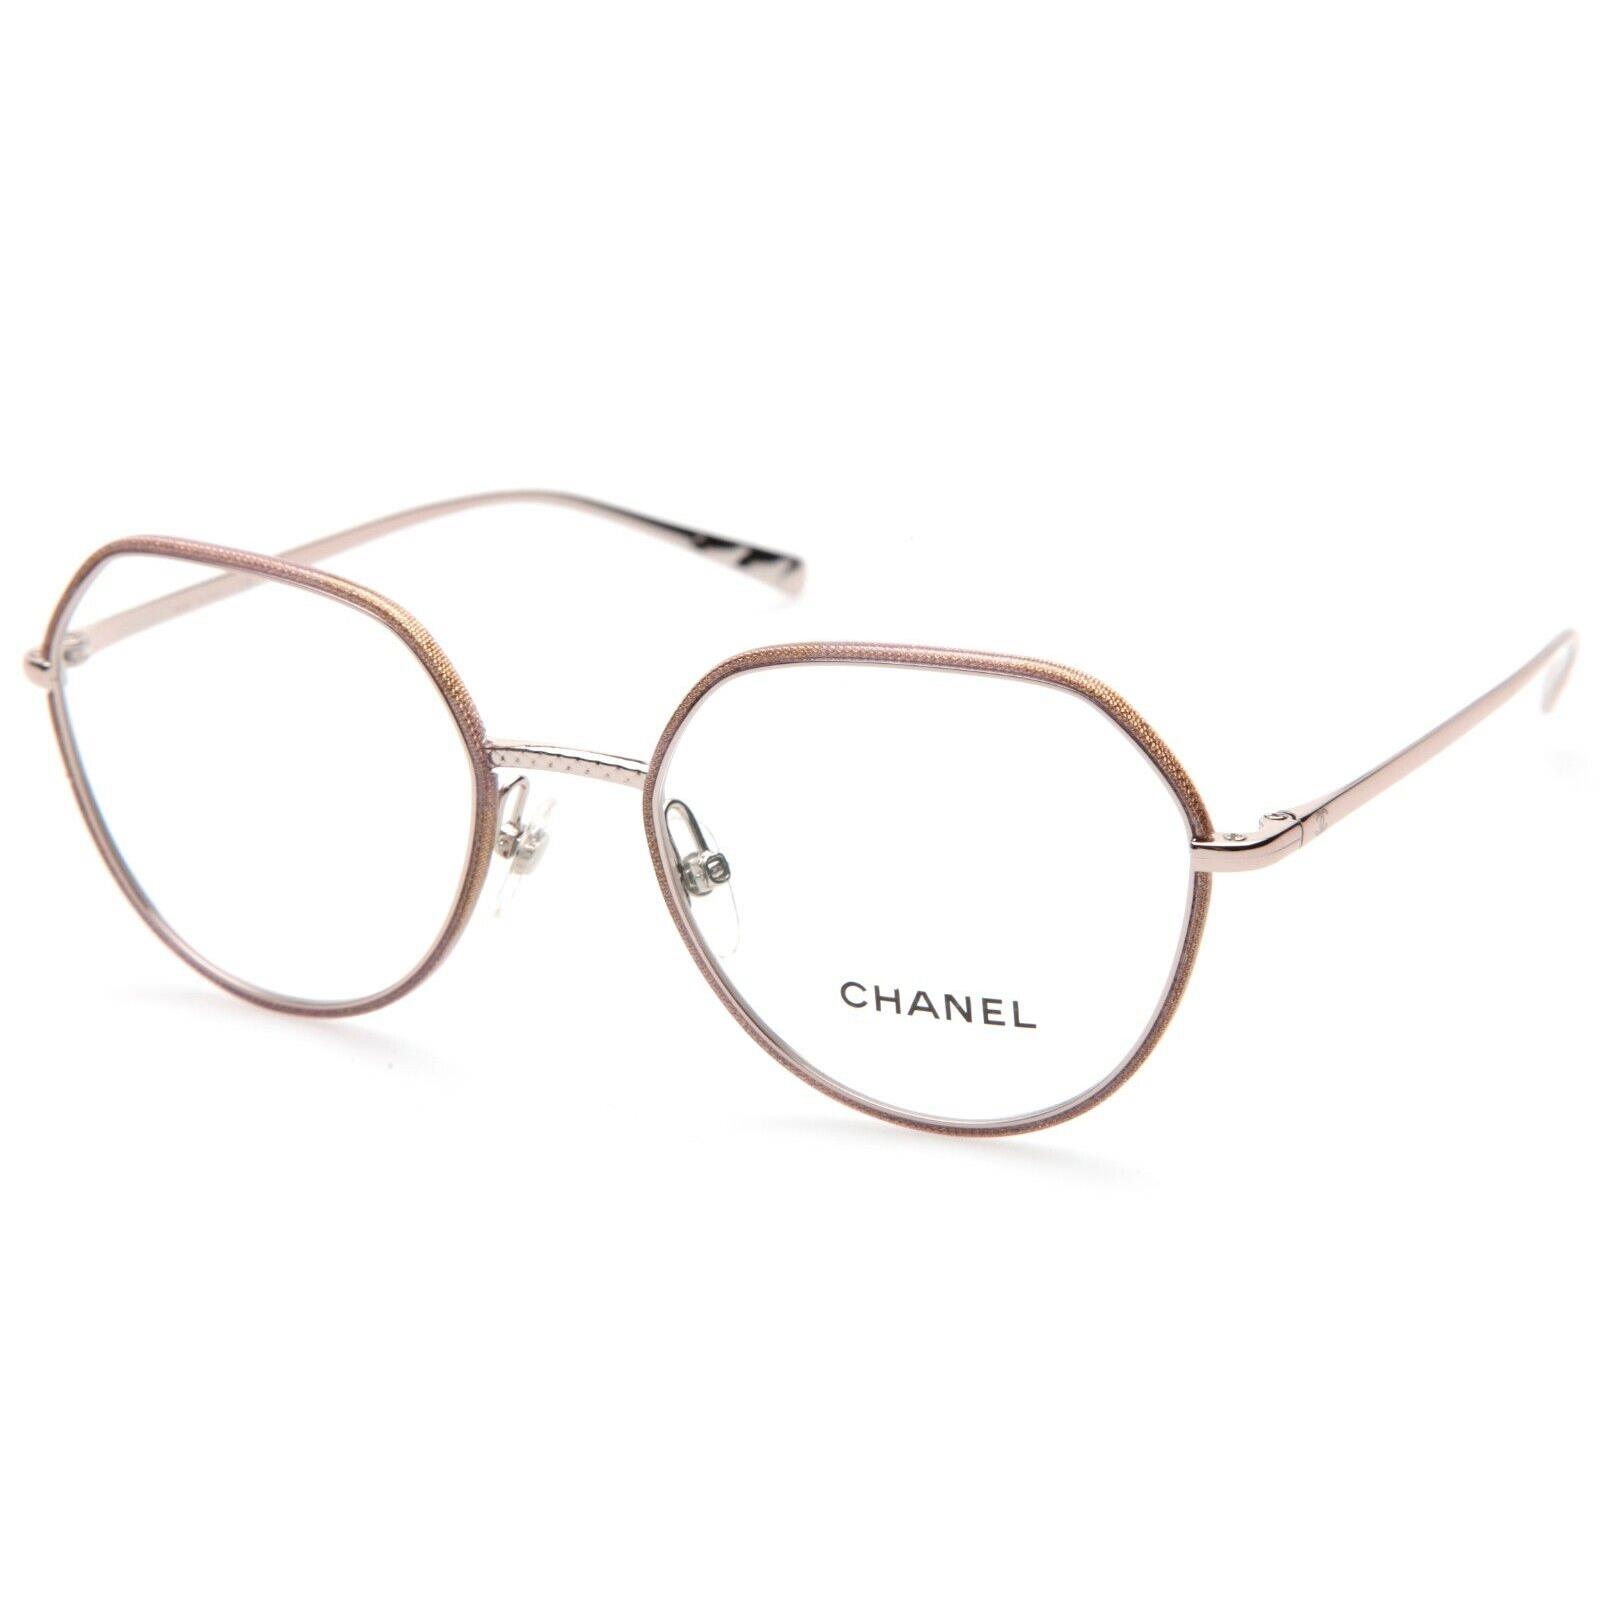 Chanel 2189-J c.475 Pink Eyeglasses Glasses Frame 52-19-135 B46mm Italy